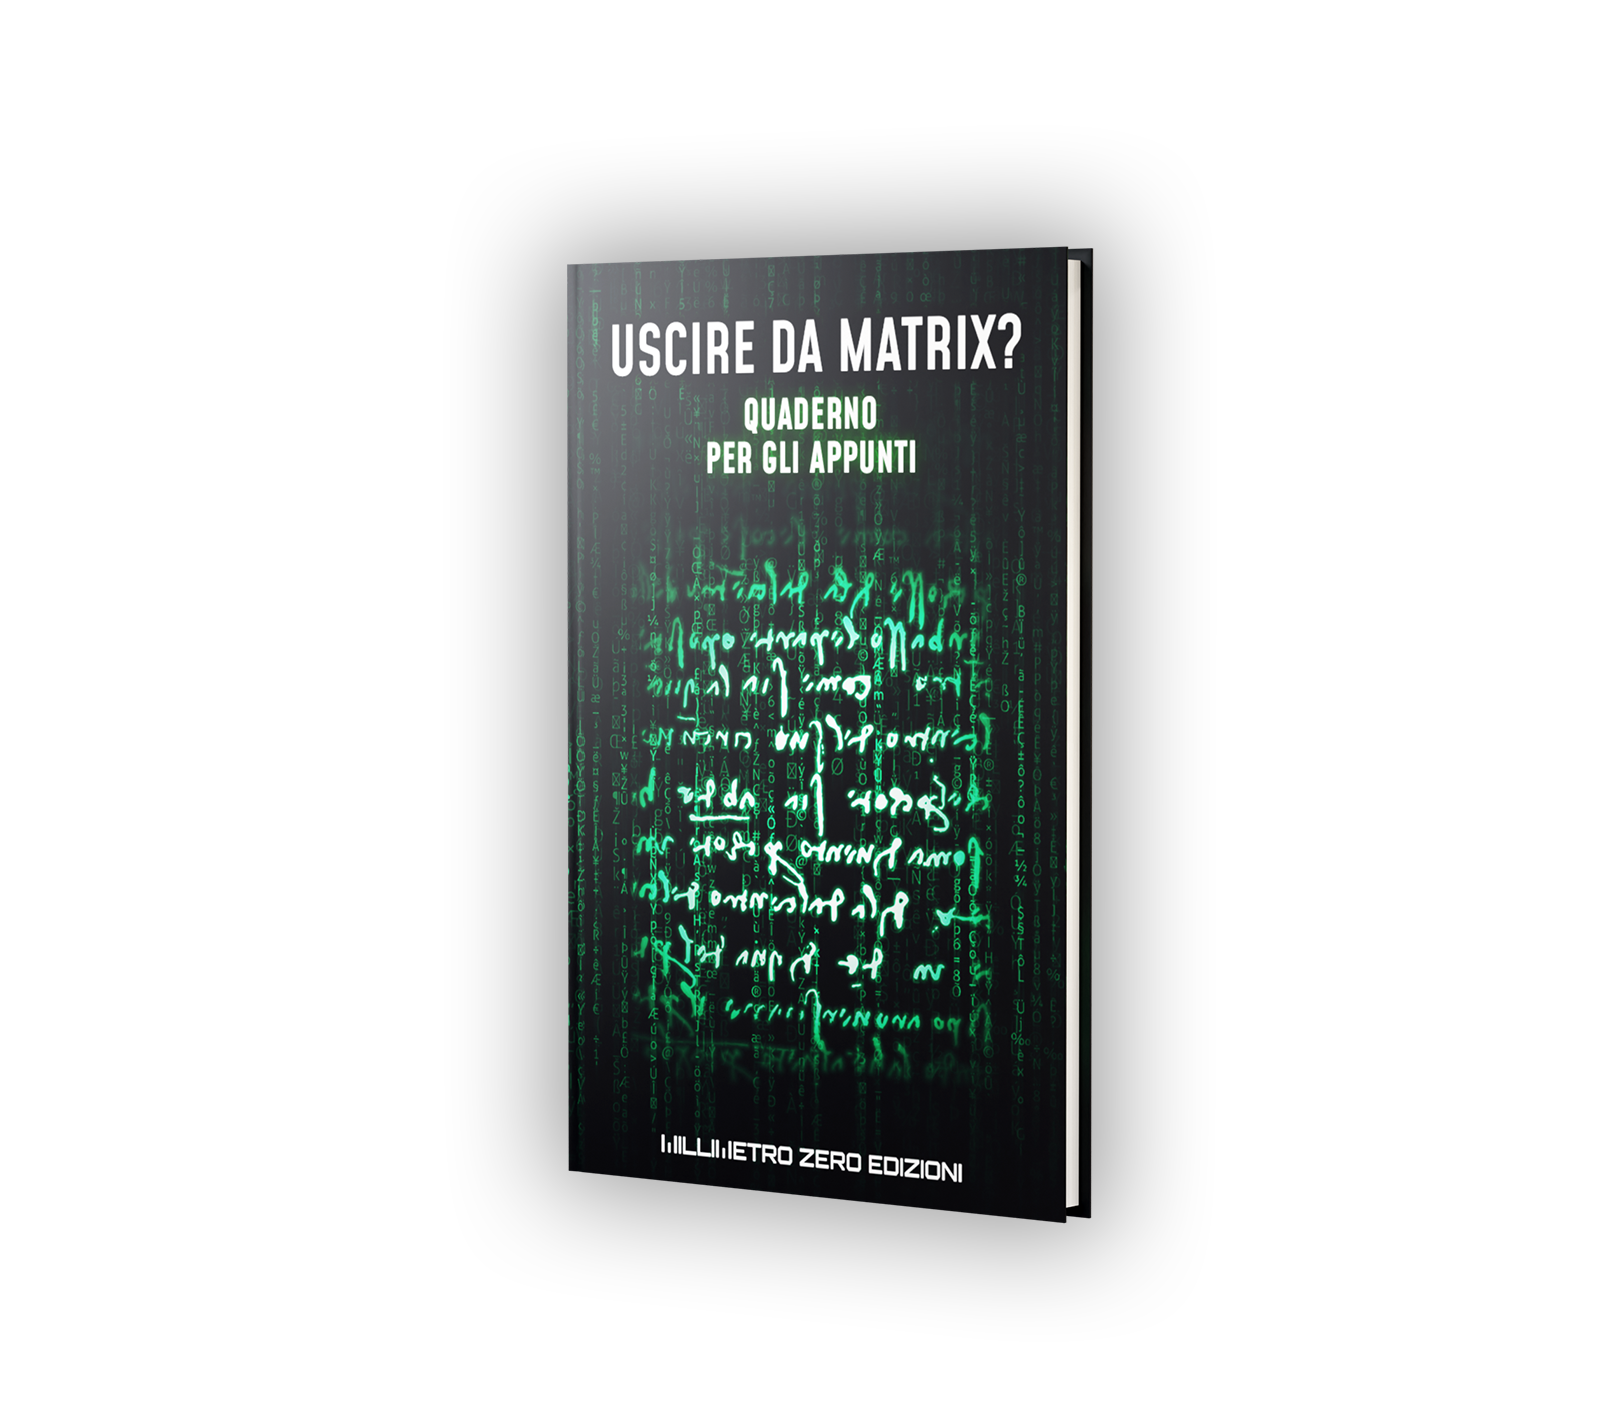 Quaderno degli appunti per “Uscire da Matrix?” - Millimetro Zero Edizioni